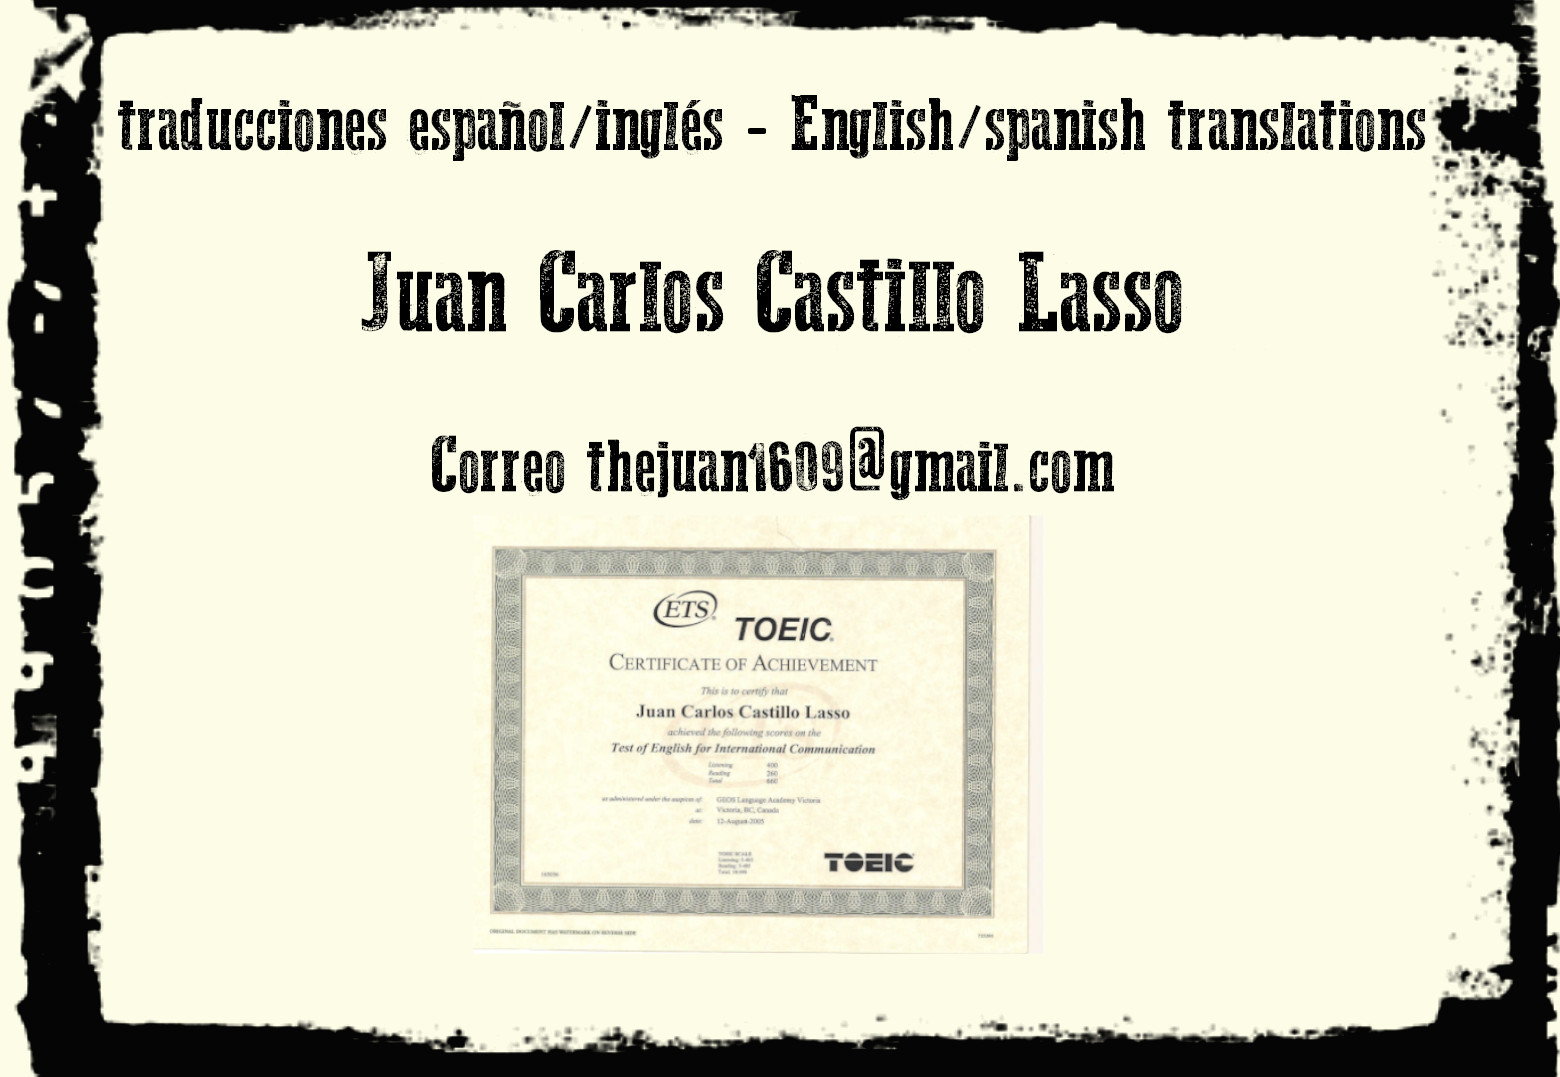 Juan Carlos Castillo Lasso

Correo thejuani603@gmail.com

~
5 roeic